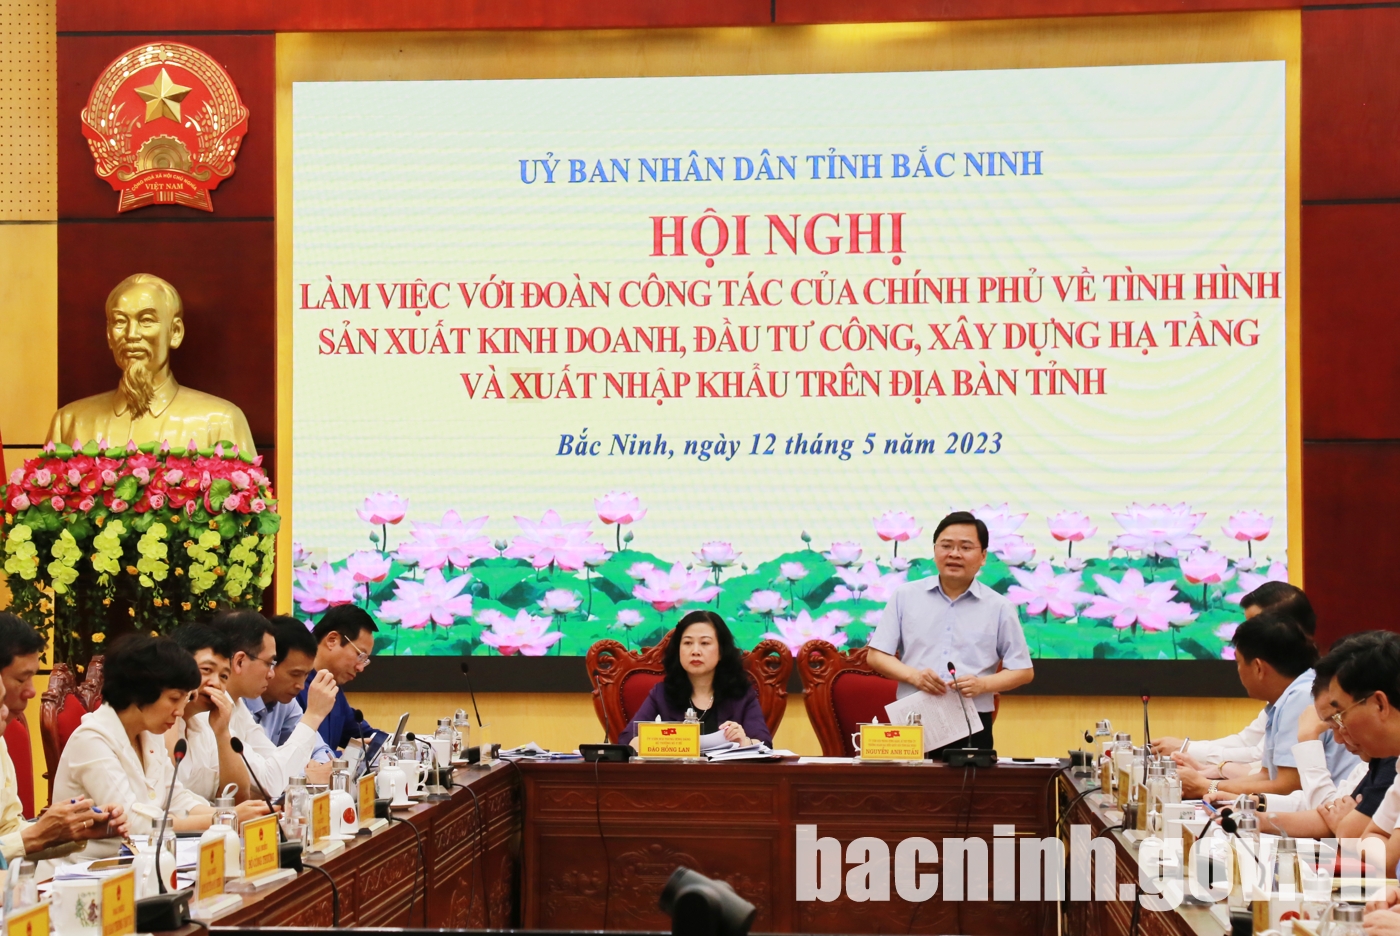 Đoàn công tác của Chính phủ làm việc tại tỉnh Bắc Ninh